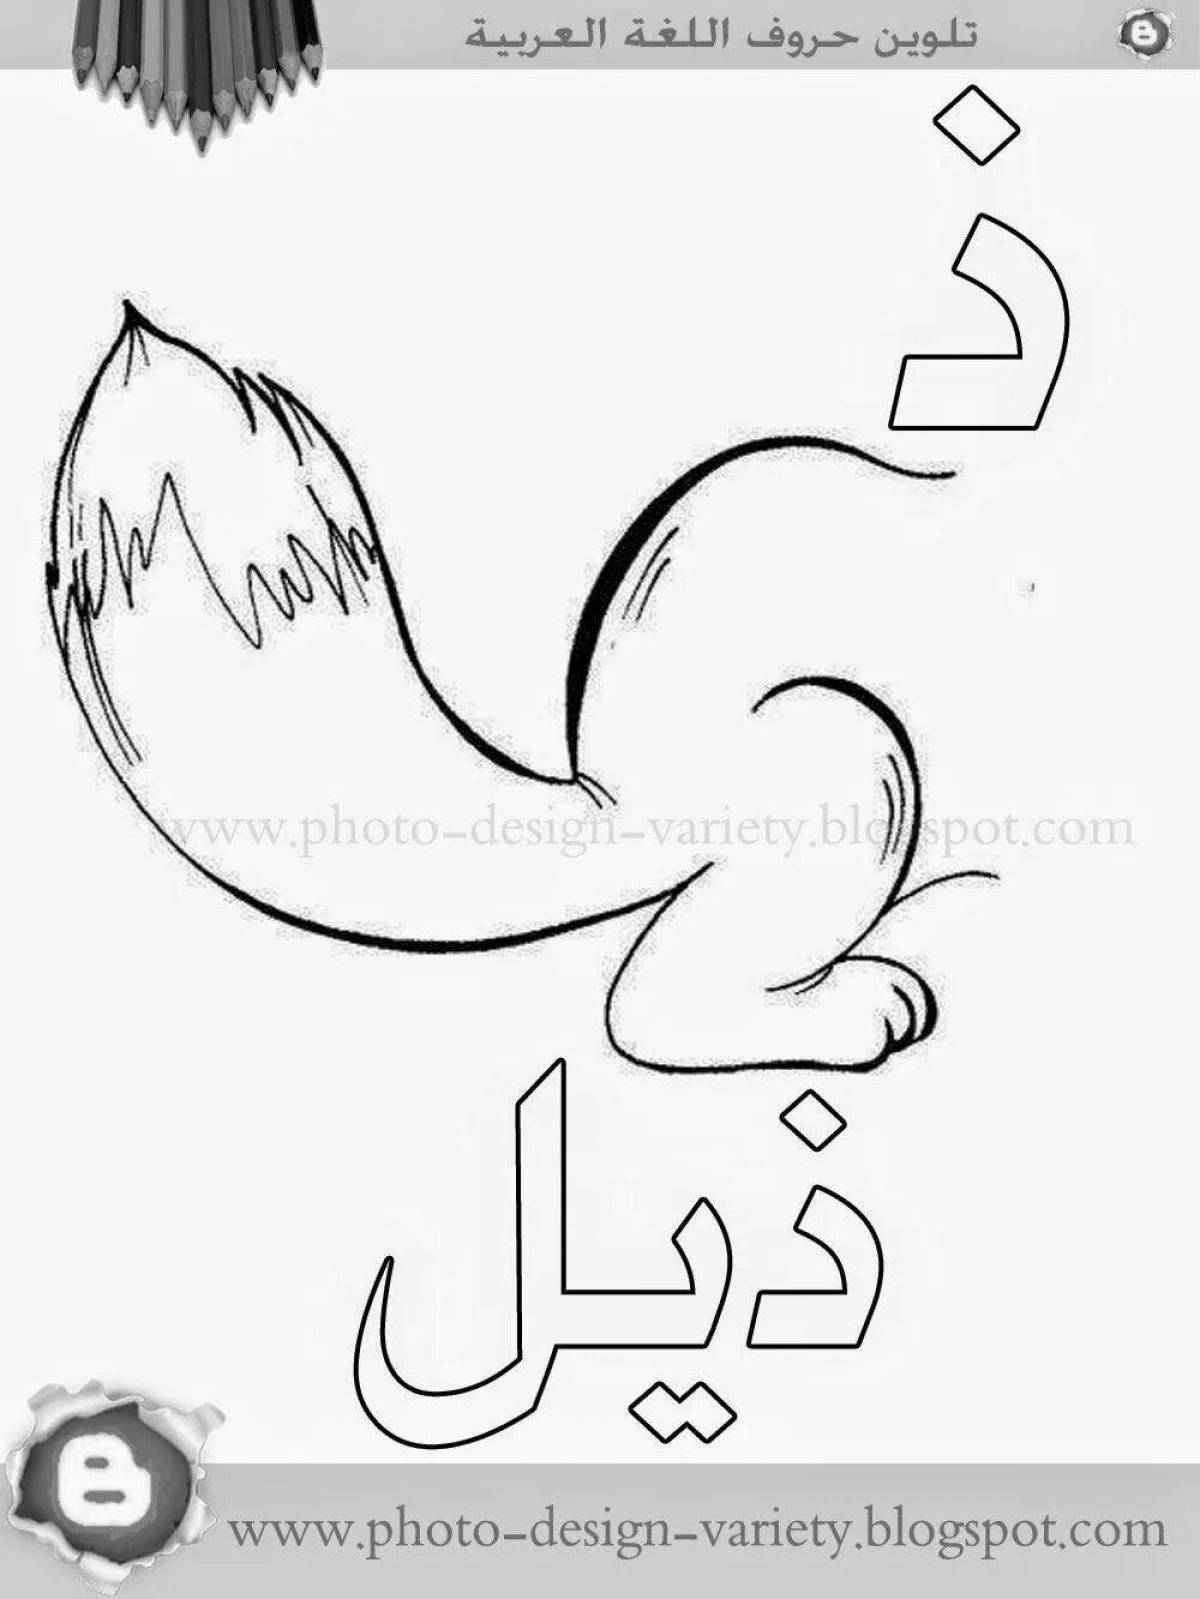 Красочная страница-раскраска арабского алфавита для детей всех возрастов